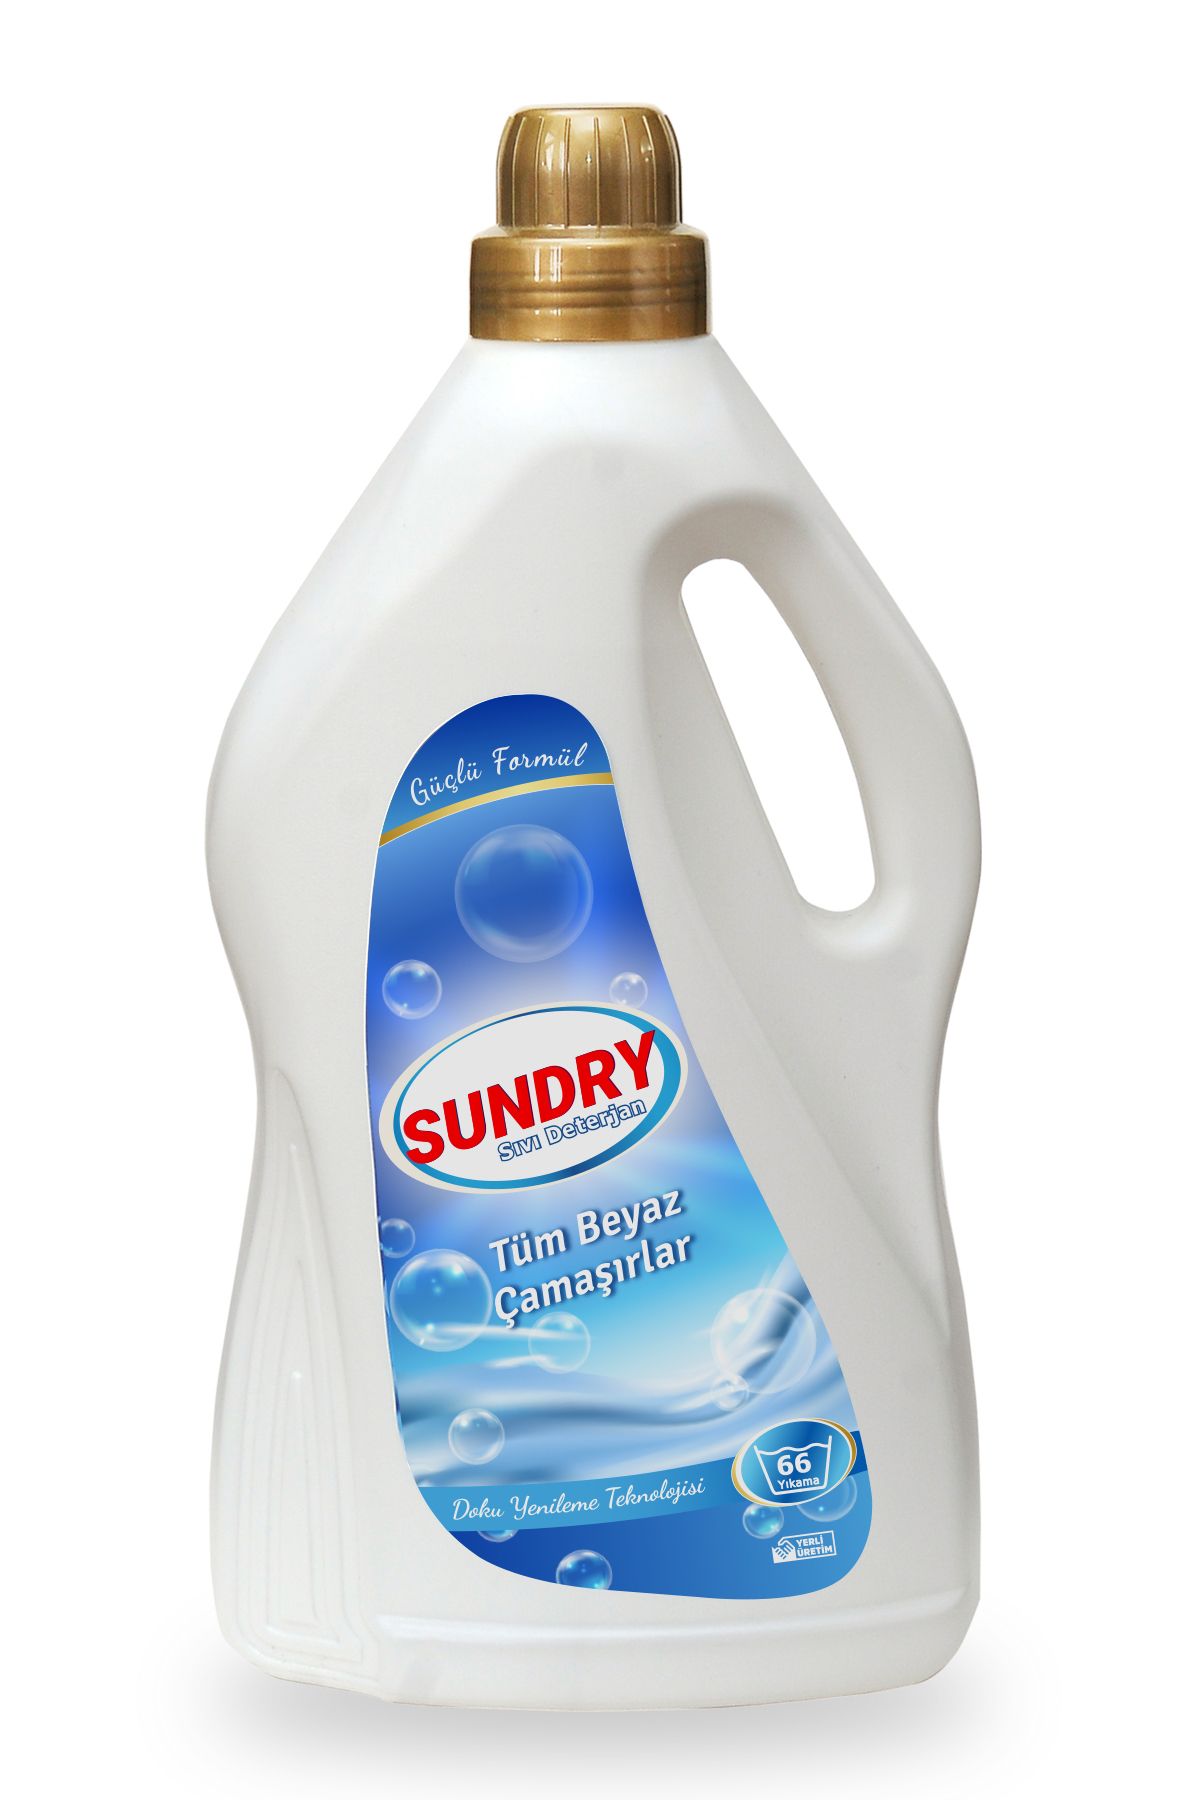 Sundry Sıvı Çamaşır Deterjanı Tüm Beyazlar için 4000ml - 66 Yıkama